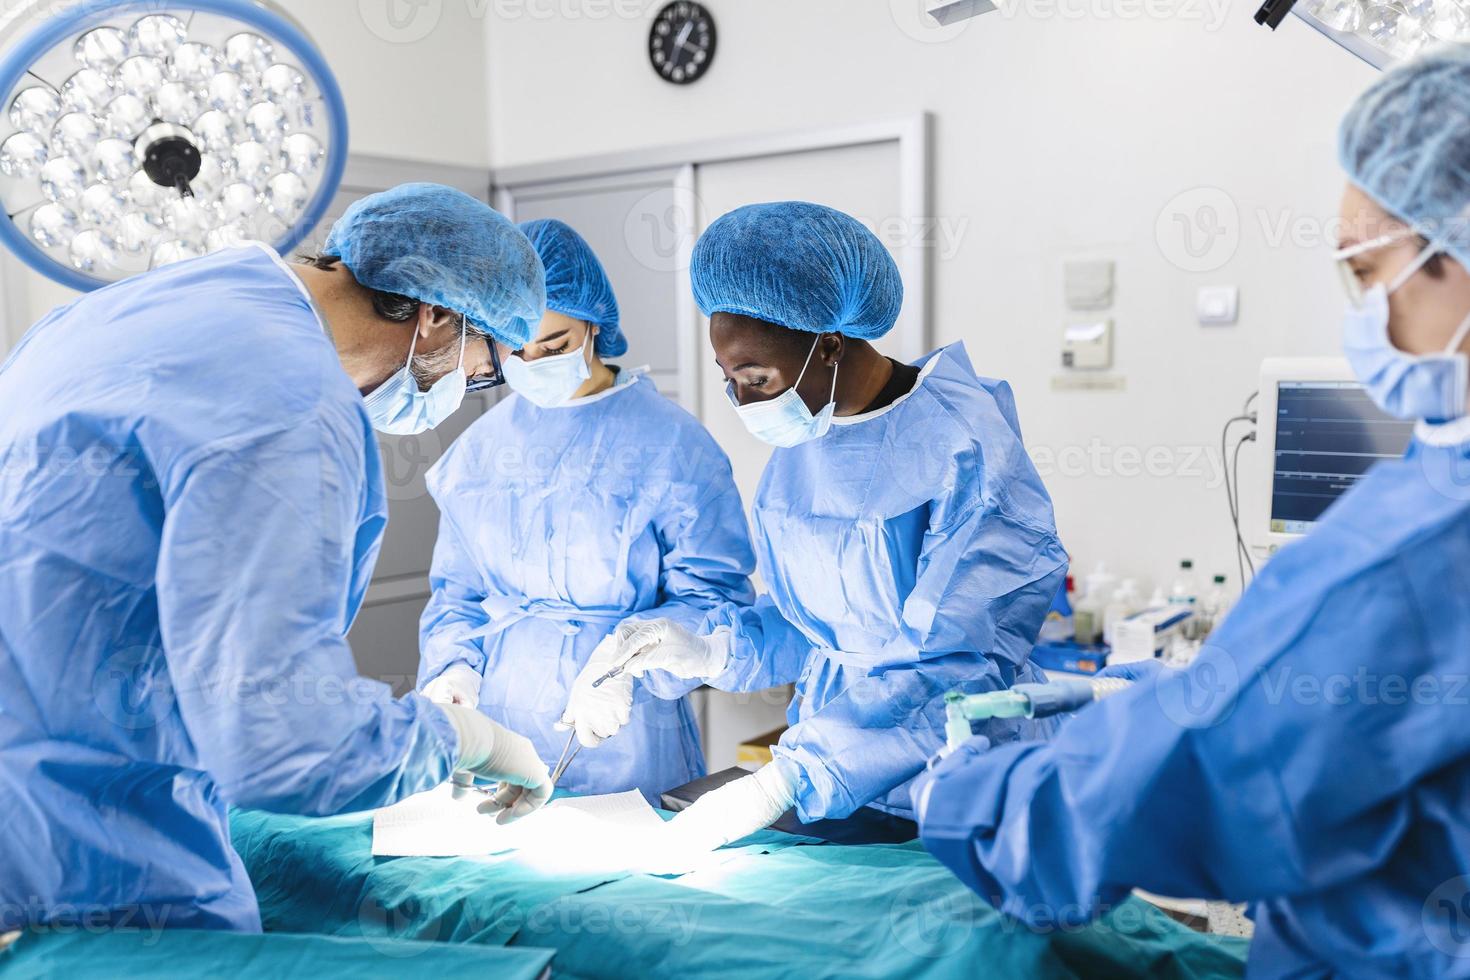 equipo quirúrgico que realiza cirugía en el quirófano moderno, equipo de médicos que se concentran en un paciente durante una cirugía, equipo de médicos que trabajan juntos durante una cirugía en el quirófano, foto